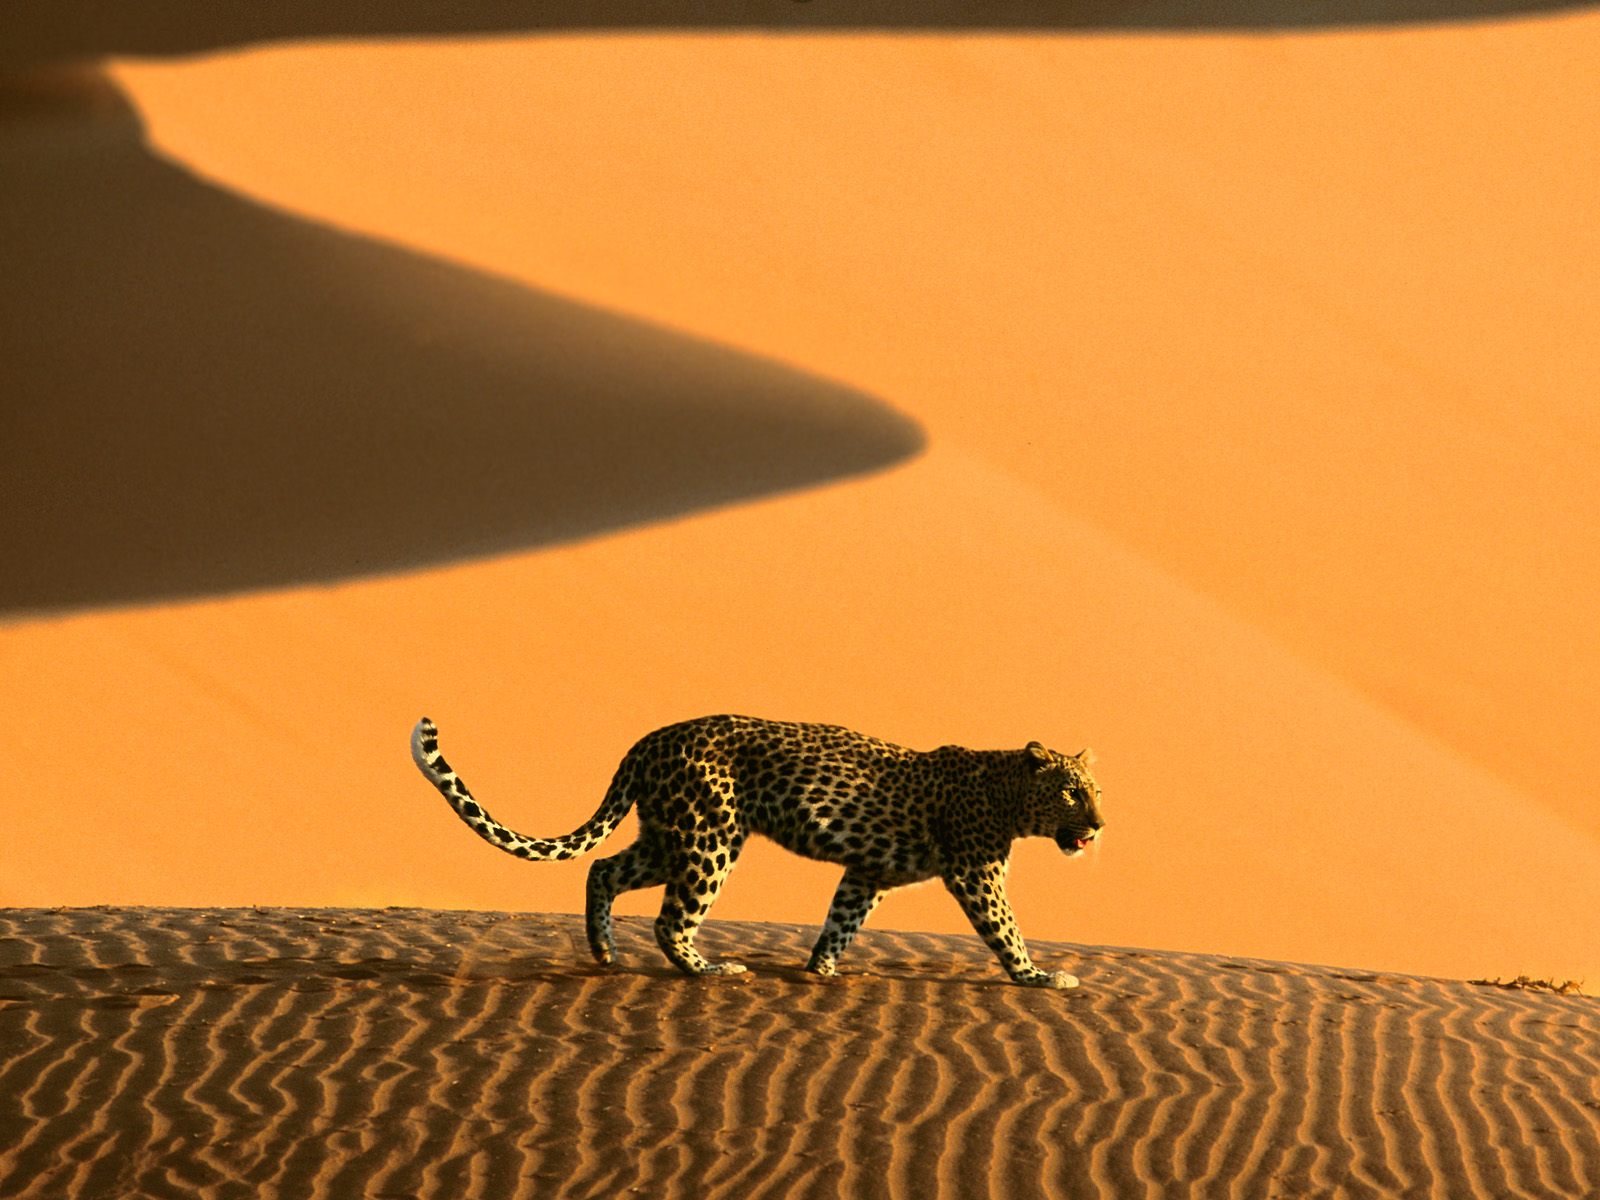 Leopard gracefully striding through scenic desert landscape.